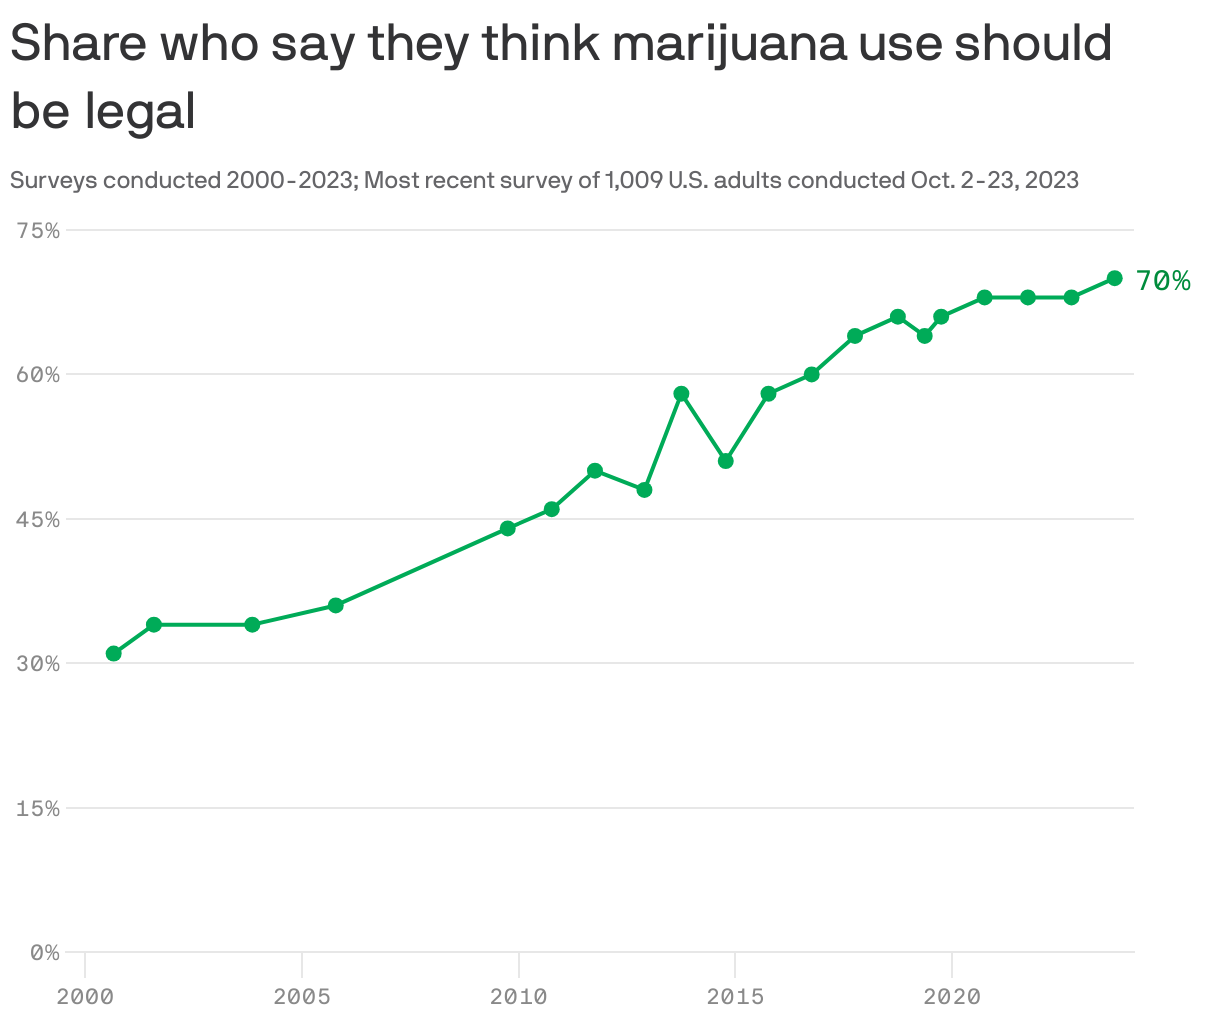 Share who say they think marijuana use should be&nbsplegal